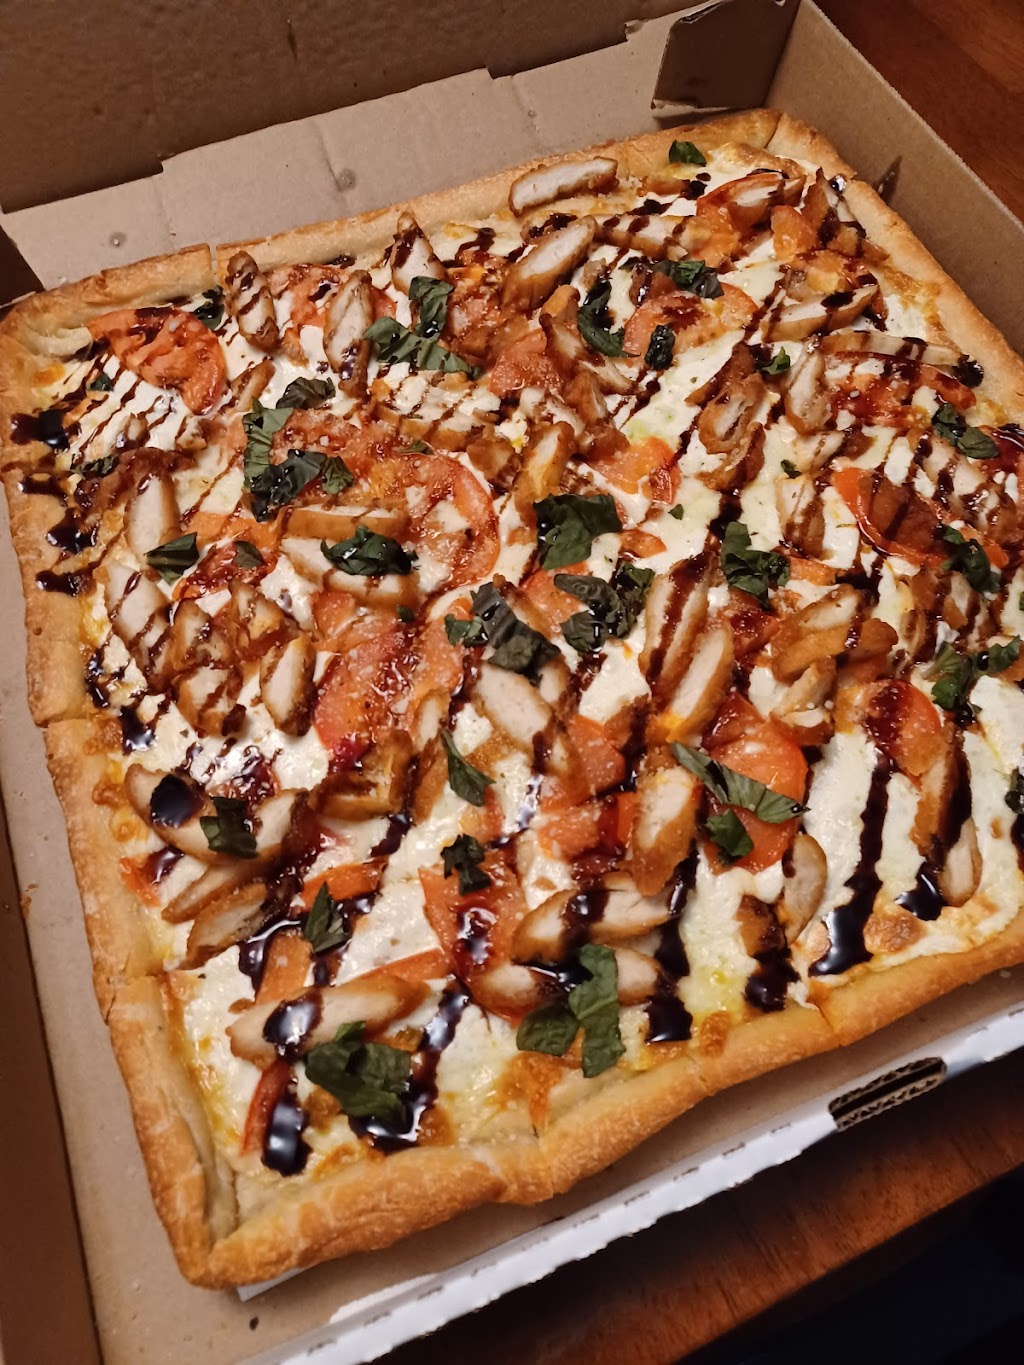 Joes Original Pizza | 501 Tansboro Rd, Berlin, NJ 08009 | Phone: (856) 767-3434